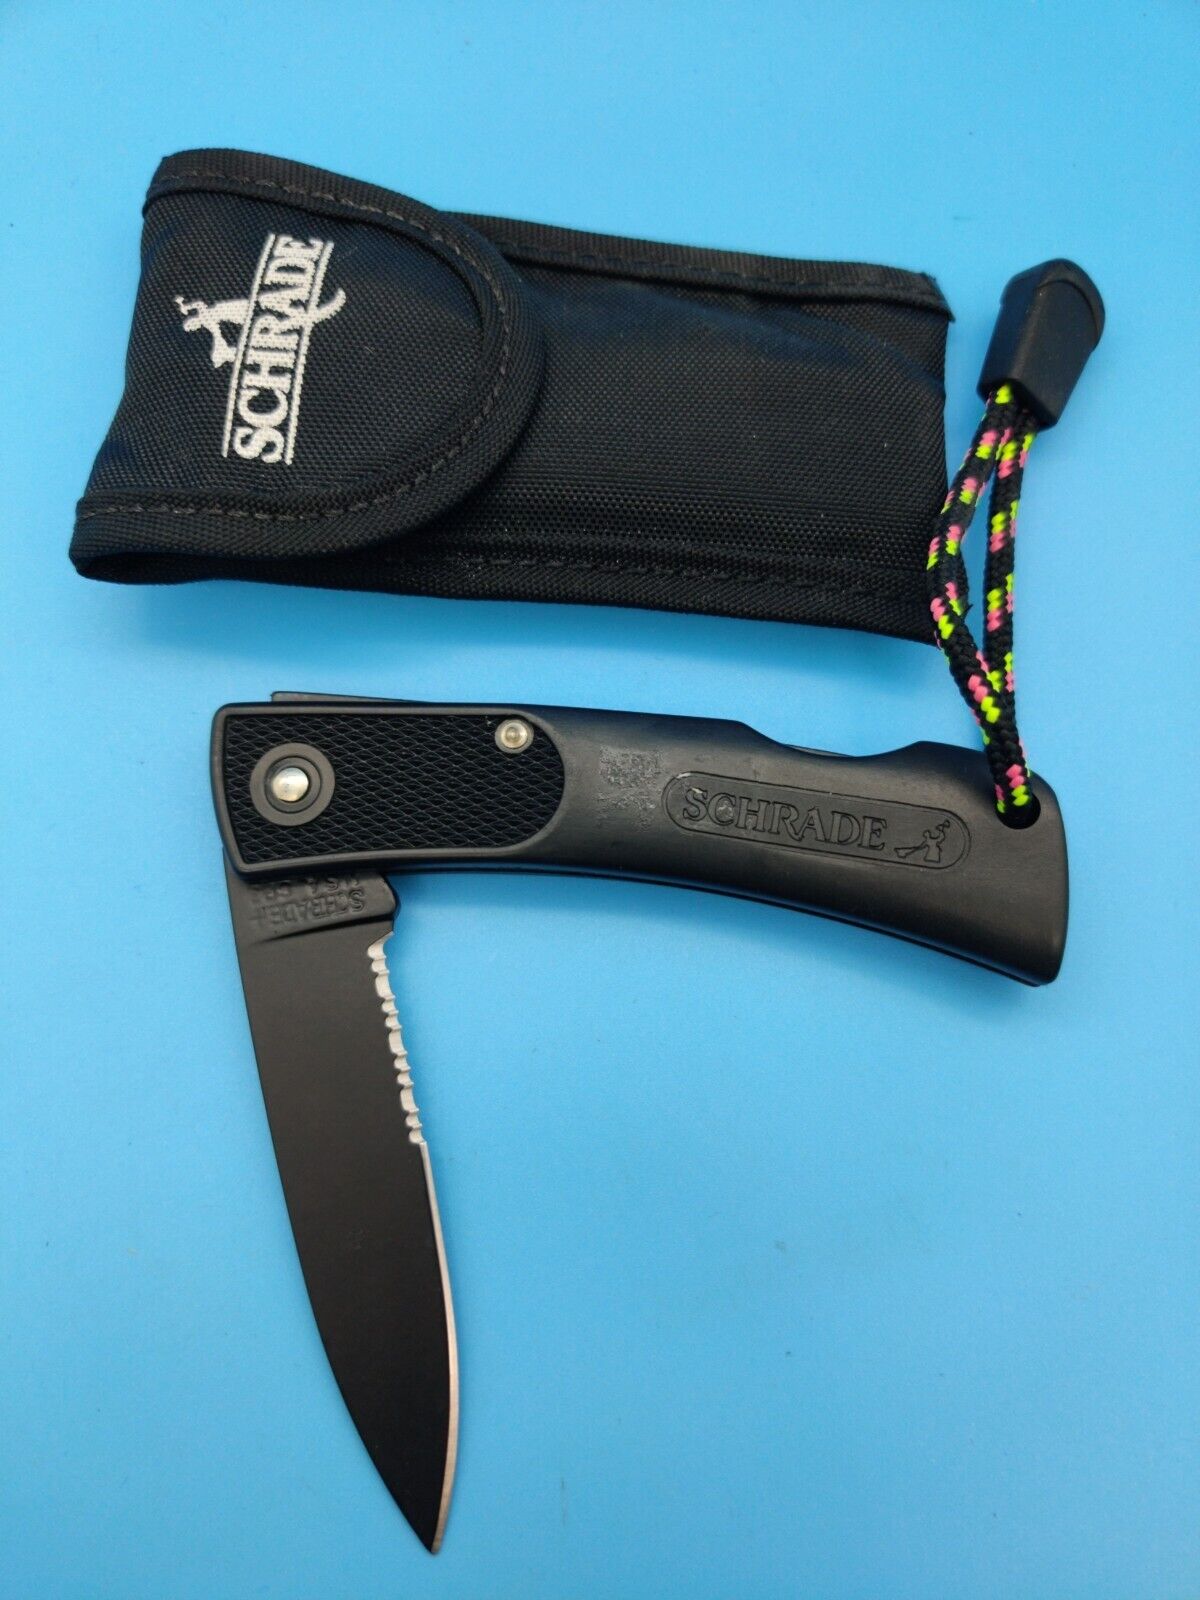 Schrade + SP3 Made in U.S.A. ALL BLACK PARTIAL SERATED Lockback Knife